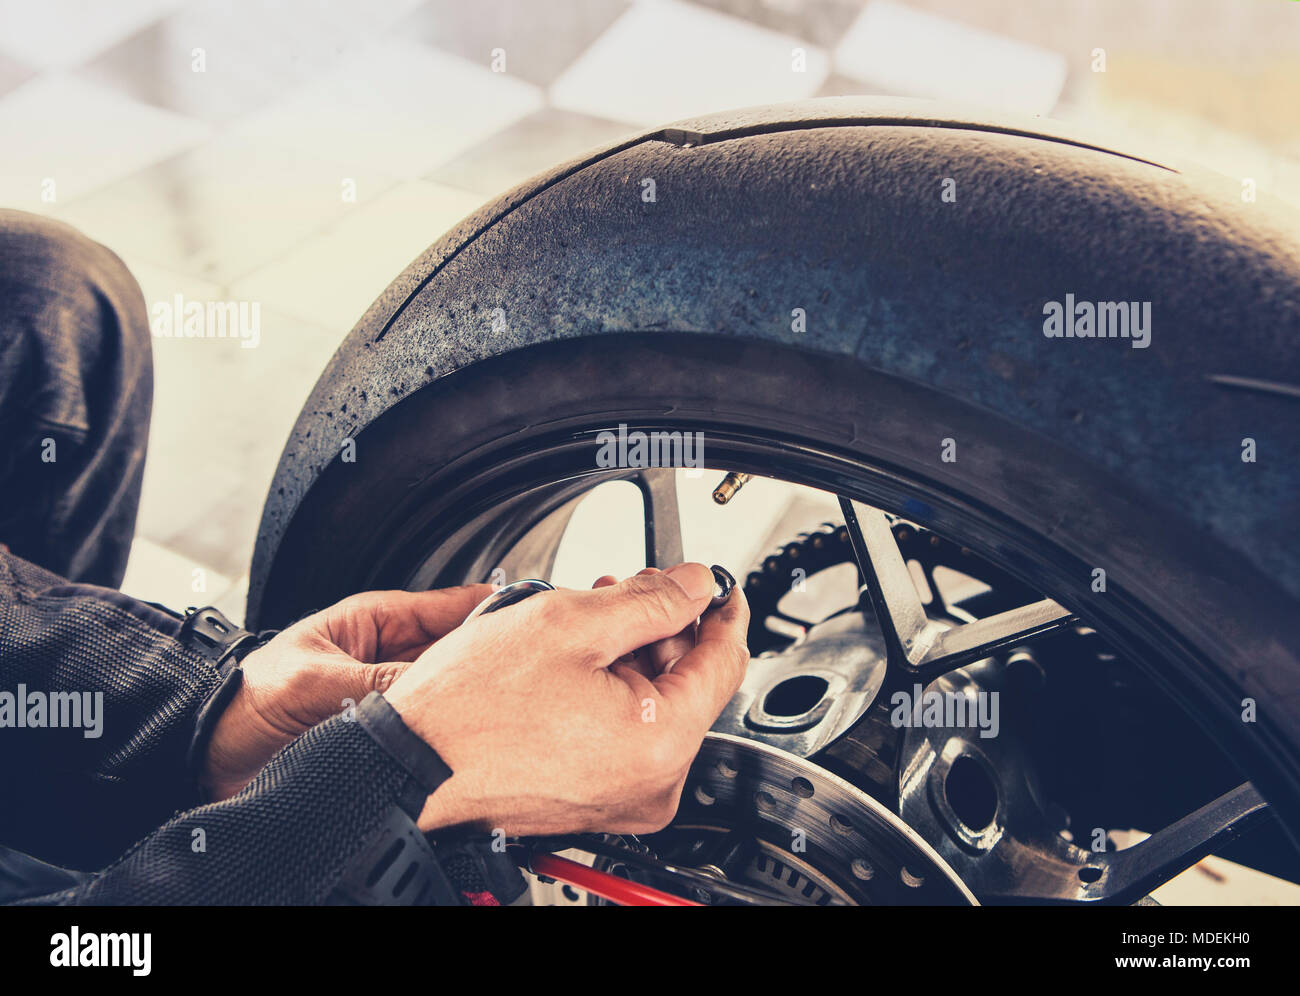 Mann Luftdruck prüfen von Motorrad Rad vor der Reise Stockfotografie - Alamy